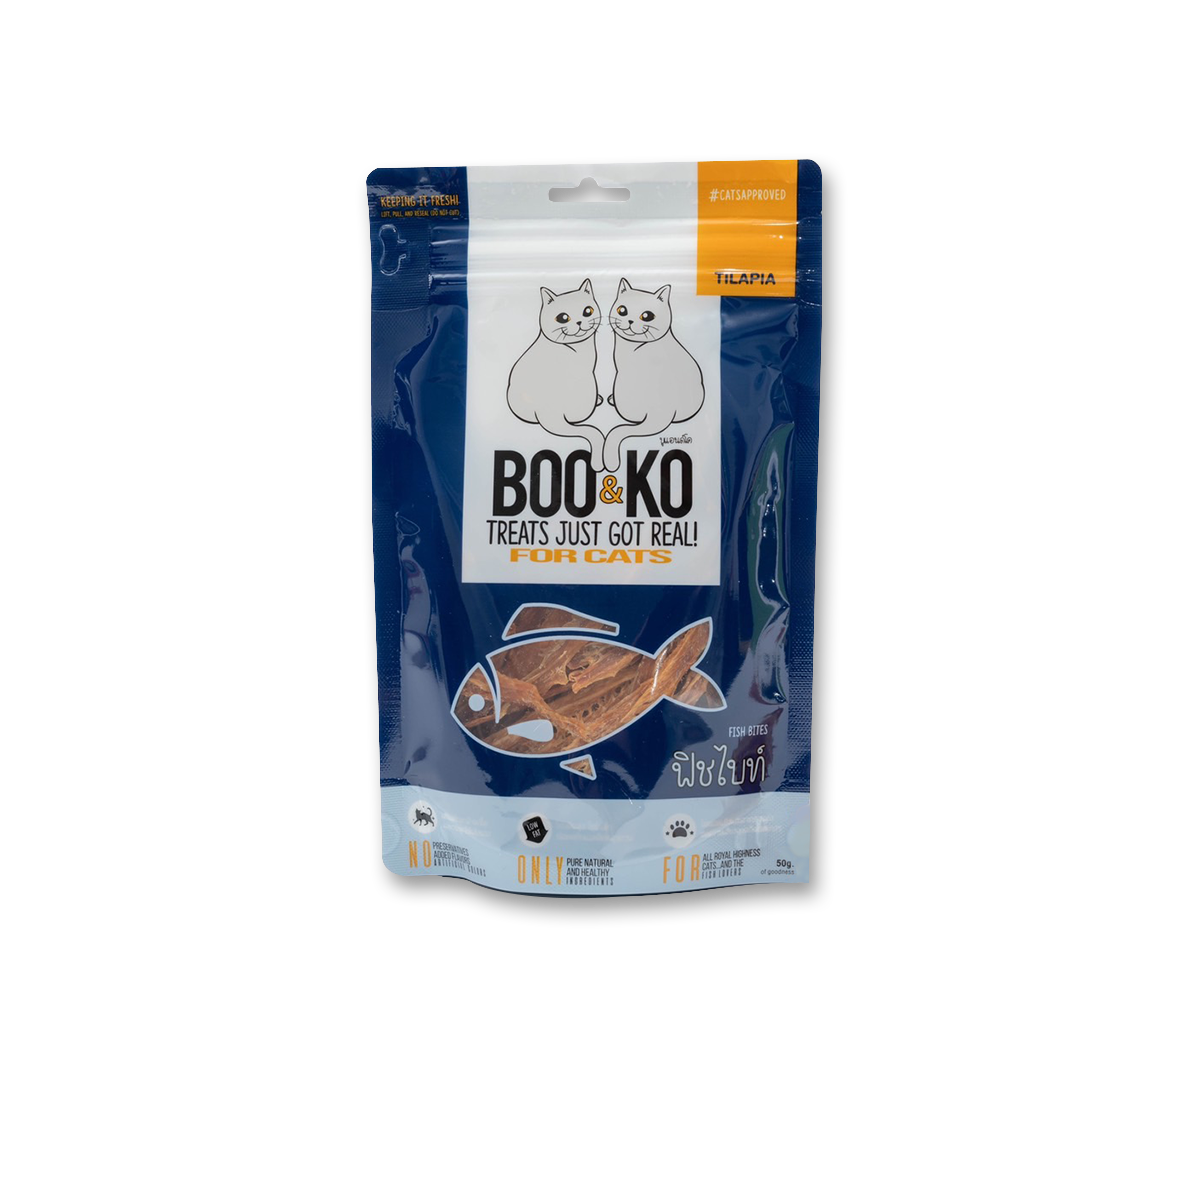 BOO&KO Fish Bites บูแอนด์โค เนื้อปลาอบแห้งสำหรับแมว ขนาด 50 กรัม